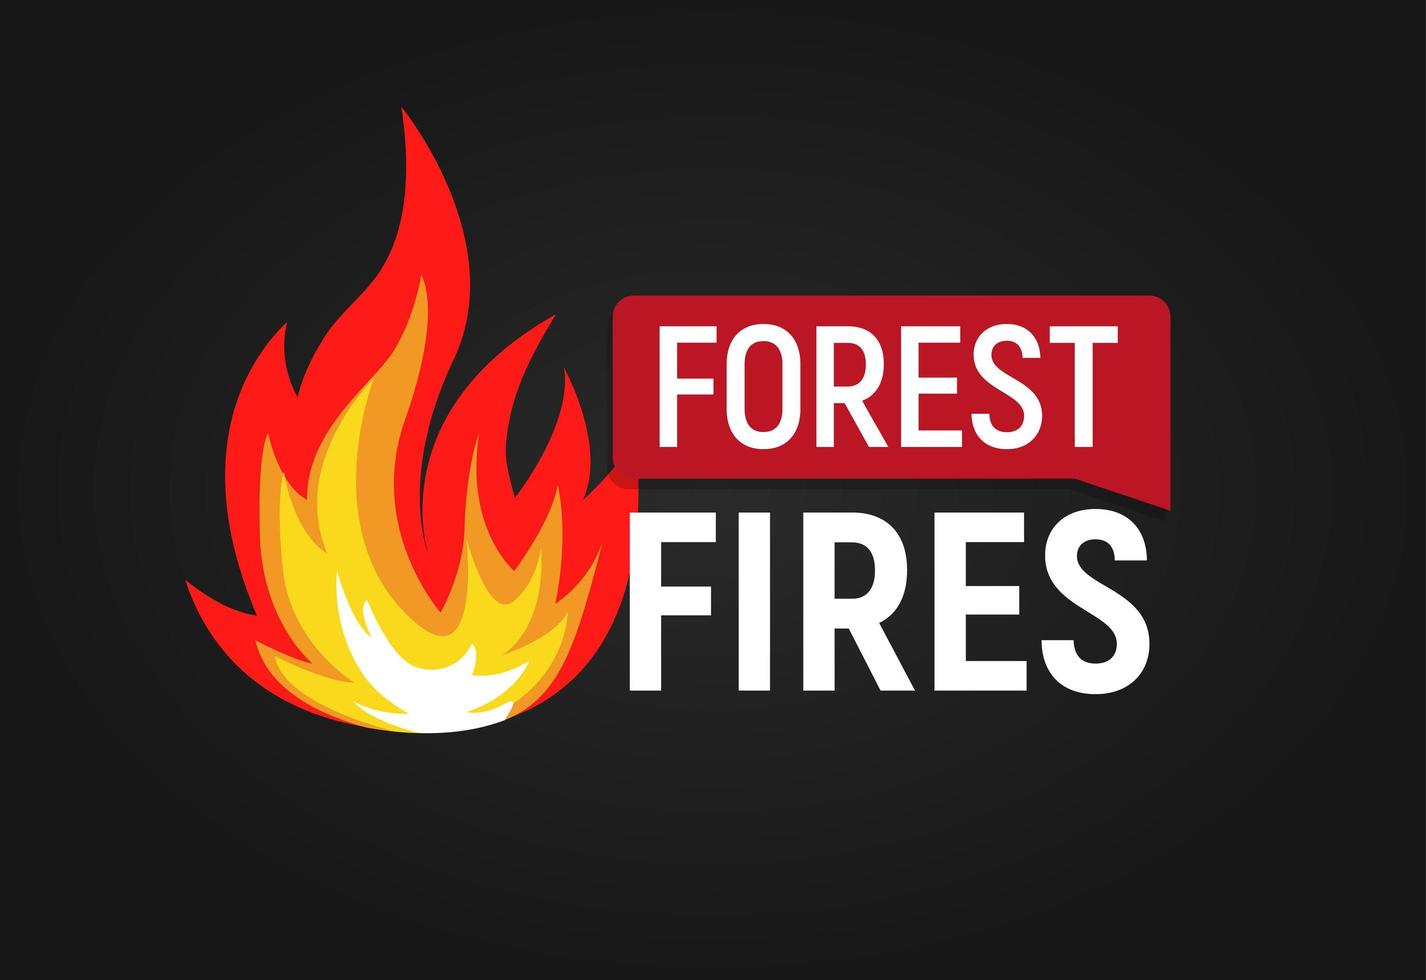 incendios forestales. gran llama con plantilla de logotipo plano de texto. Ilustración de vector aislado sobre fondo blanco.